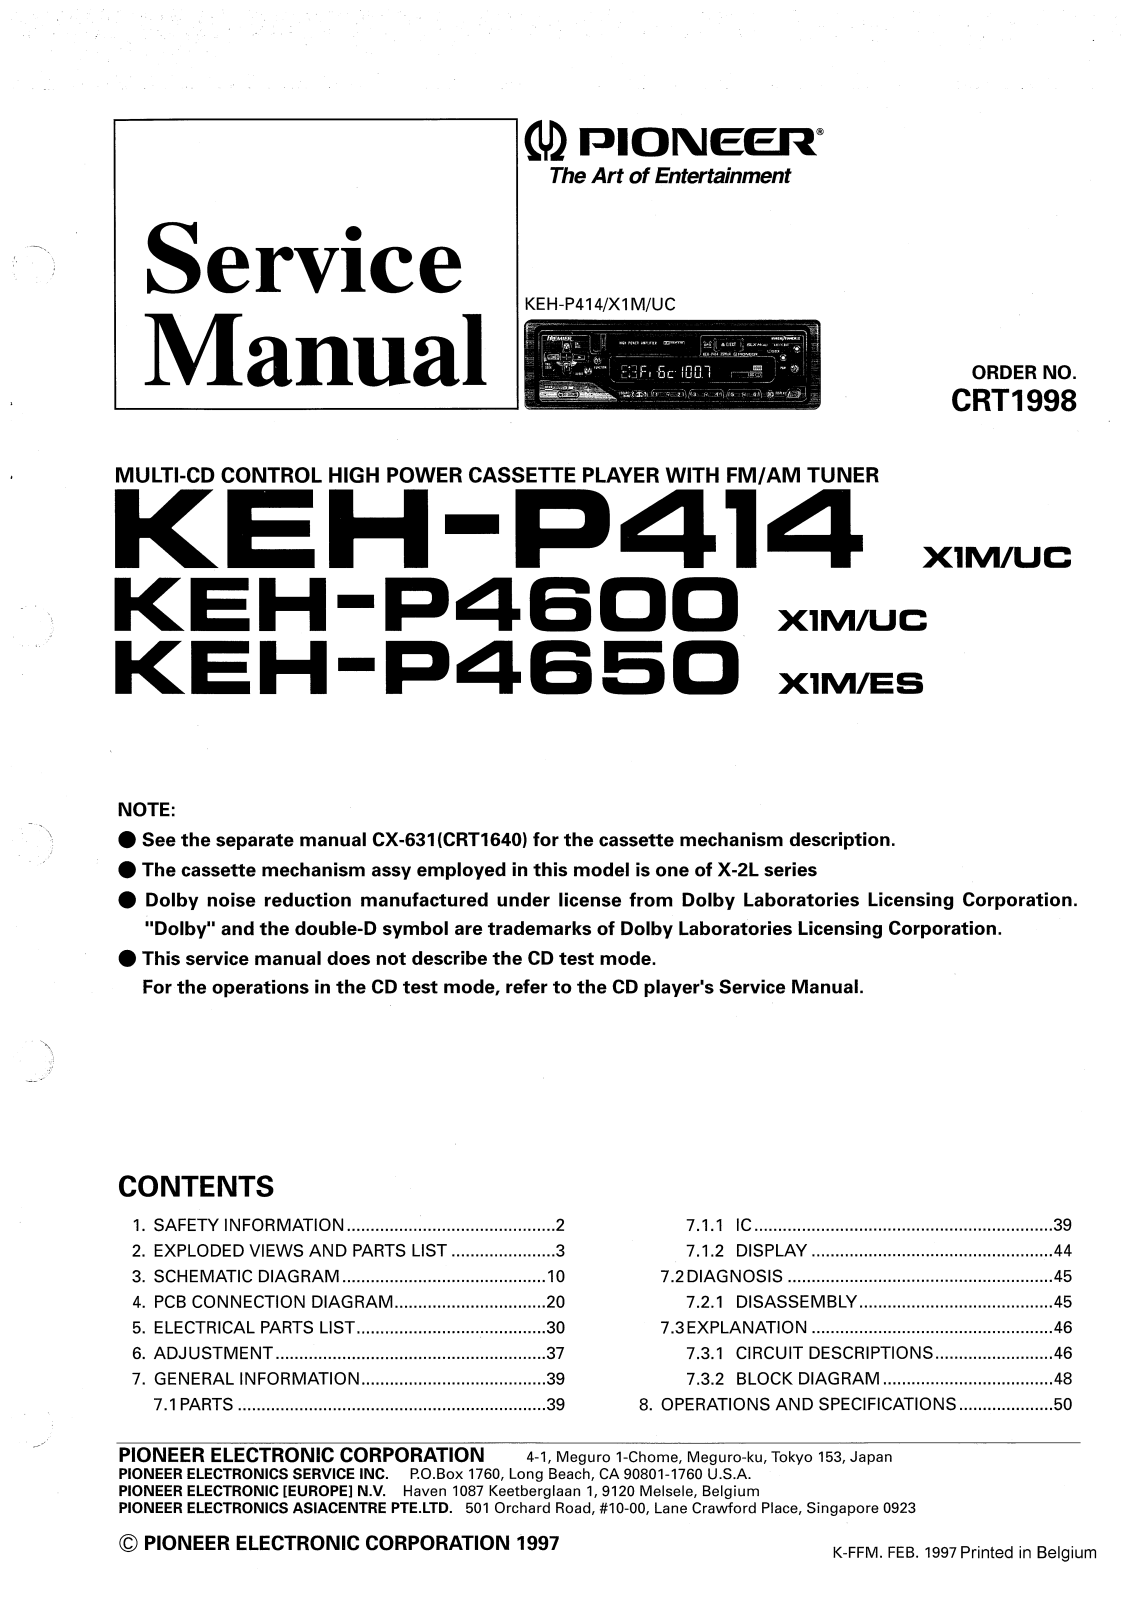 Pioneer KEHP-414, KEHP-4600, KEHP-4650 Service manual